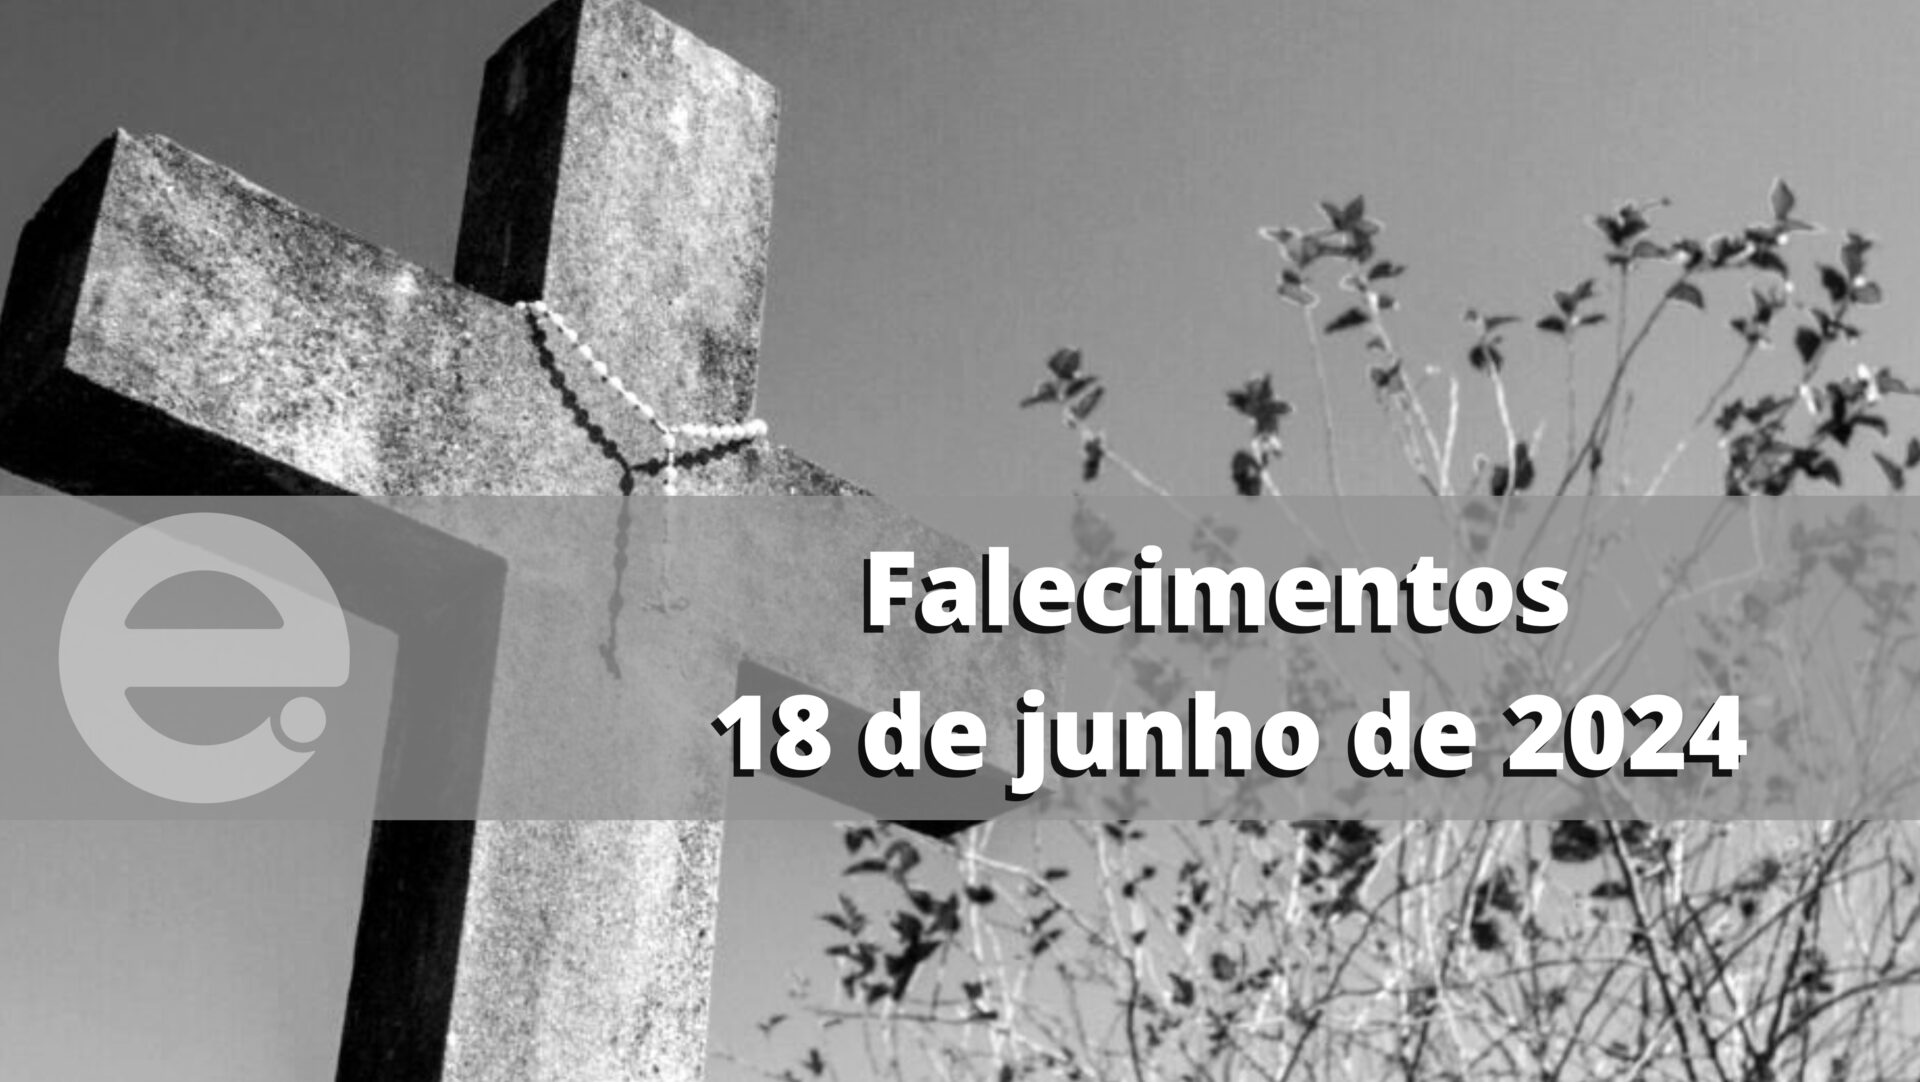 Confira os falecimentos desta terça-feira, 18 de junho de 2024, em Limeira